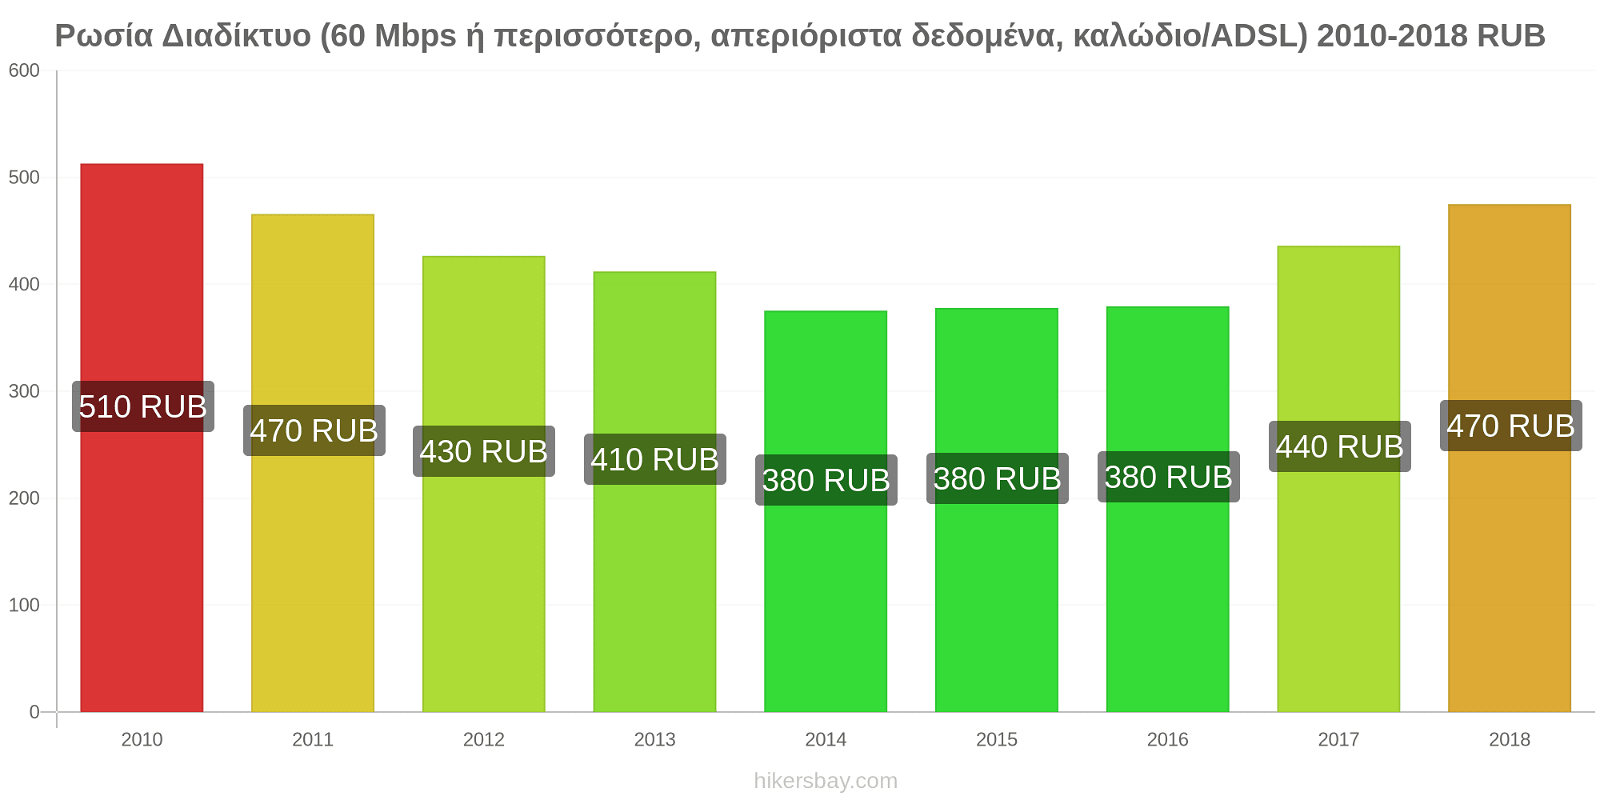 Ρωσία αλλαγές τιμών Διαδίκτυο (60 Mbps ή περισσότερο, απεριόριστα δεδομένα, καλώδιο/ADSL) hikersbay.com